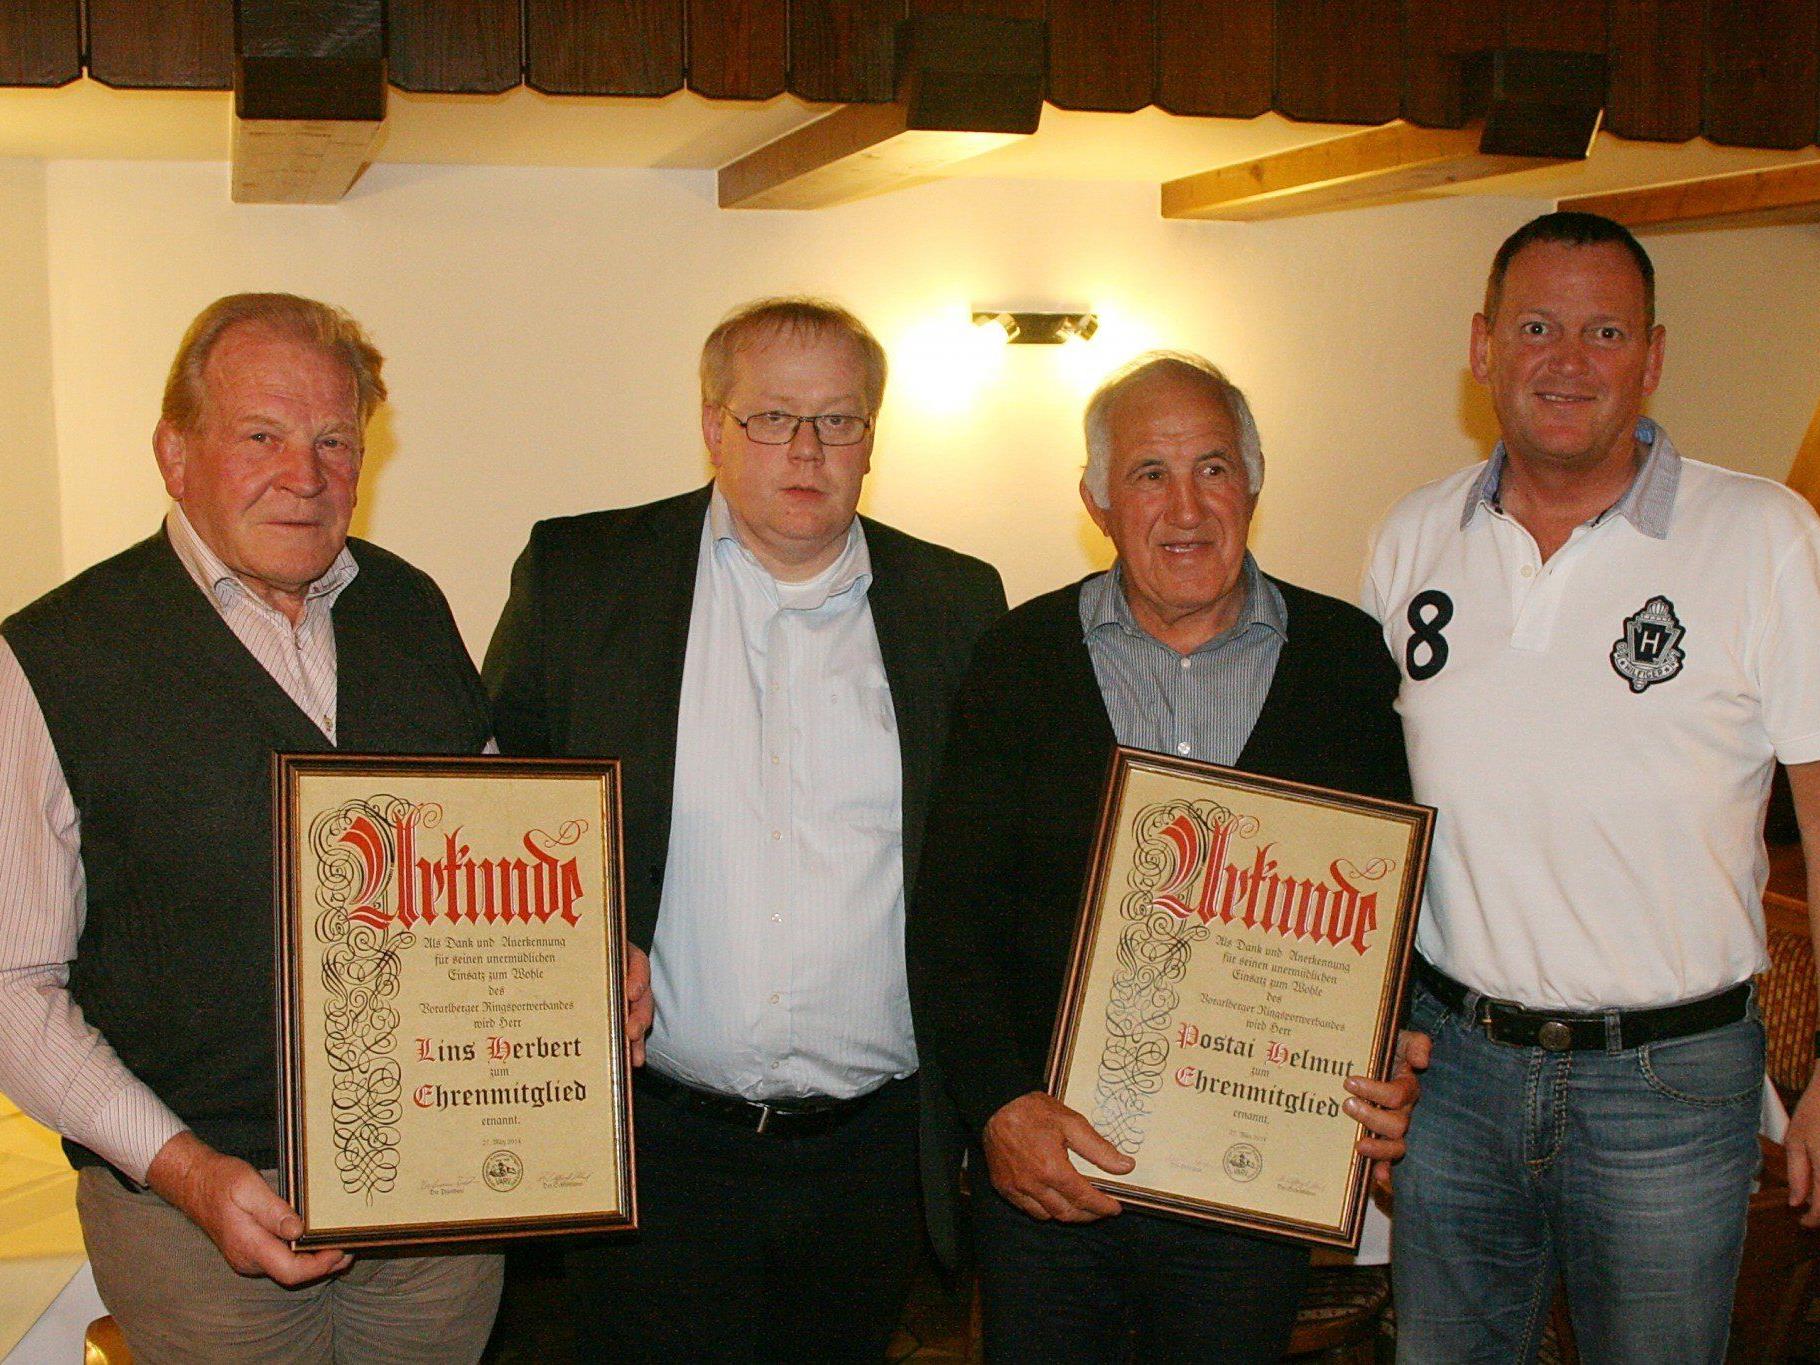 Helmut Postai und Herbert Lins wurden zu Ehrenmitgliedern ernannt.